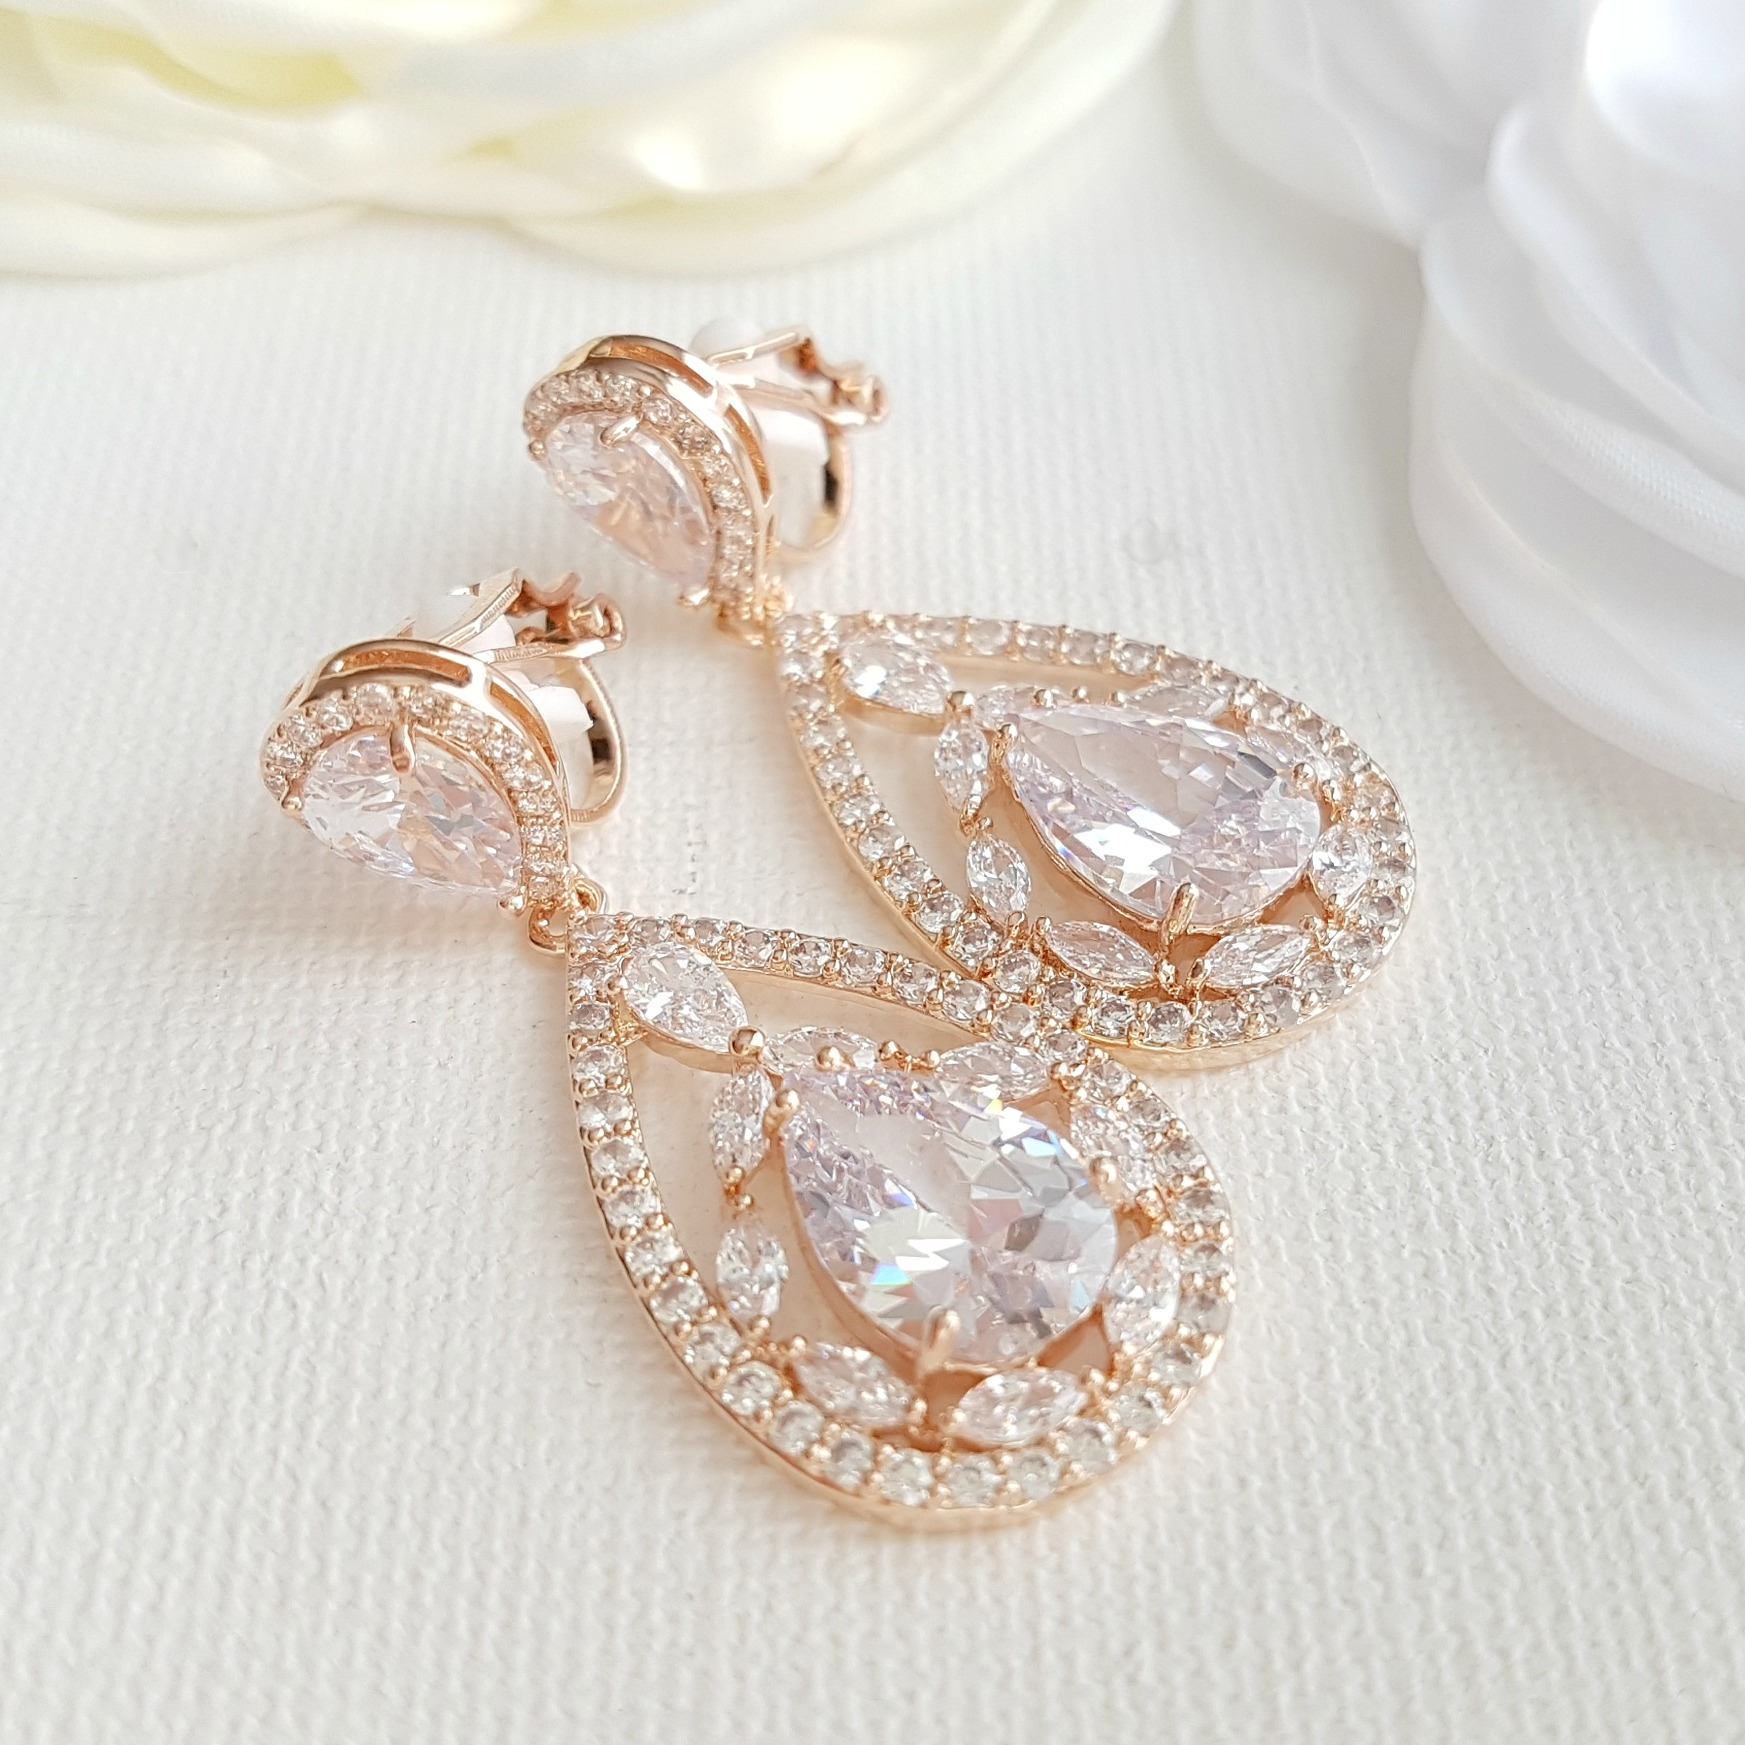 Gold Clipon Wedding Earrings Gold Clipon Bridal Earrings  Etsy  Clip on  earrings Earrings Pearl earrings wedding